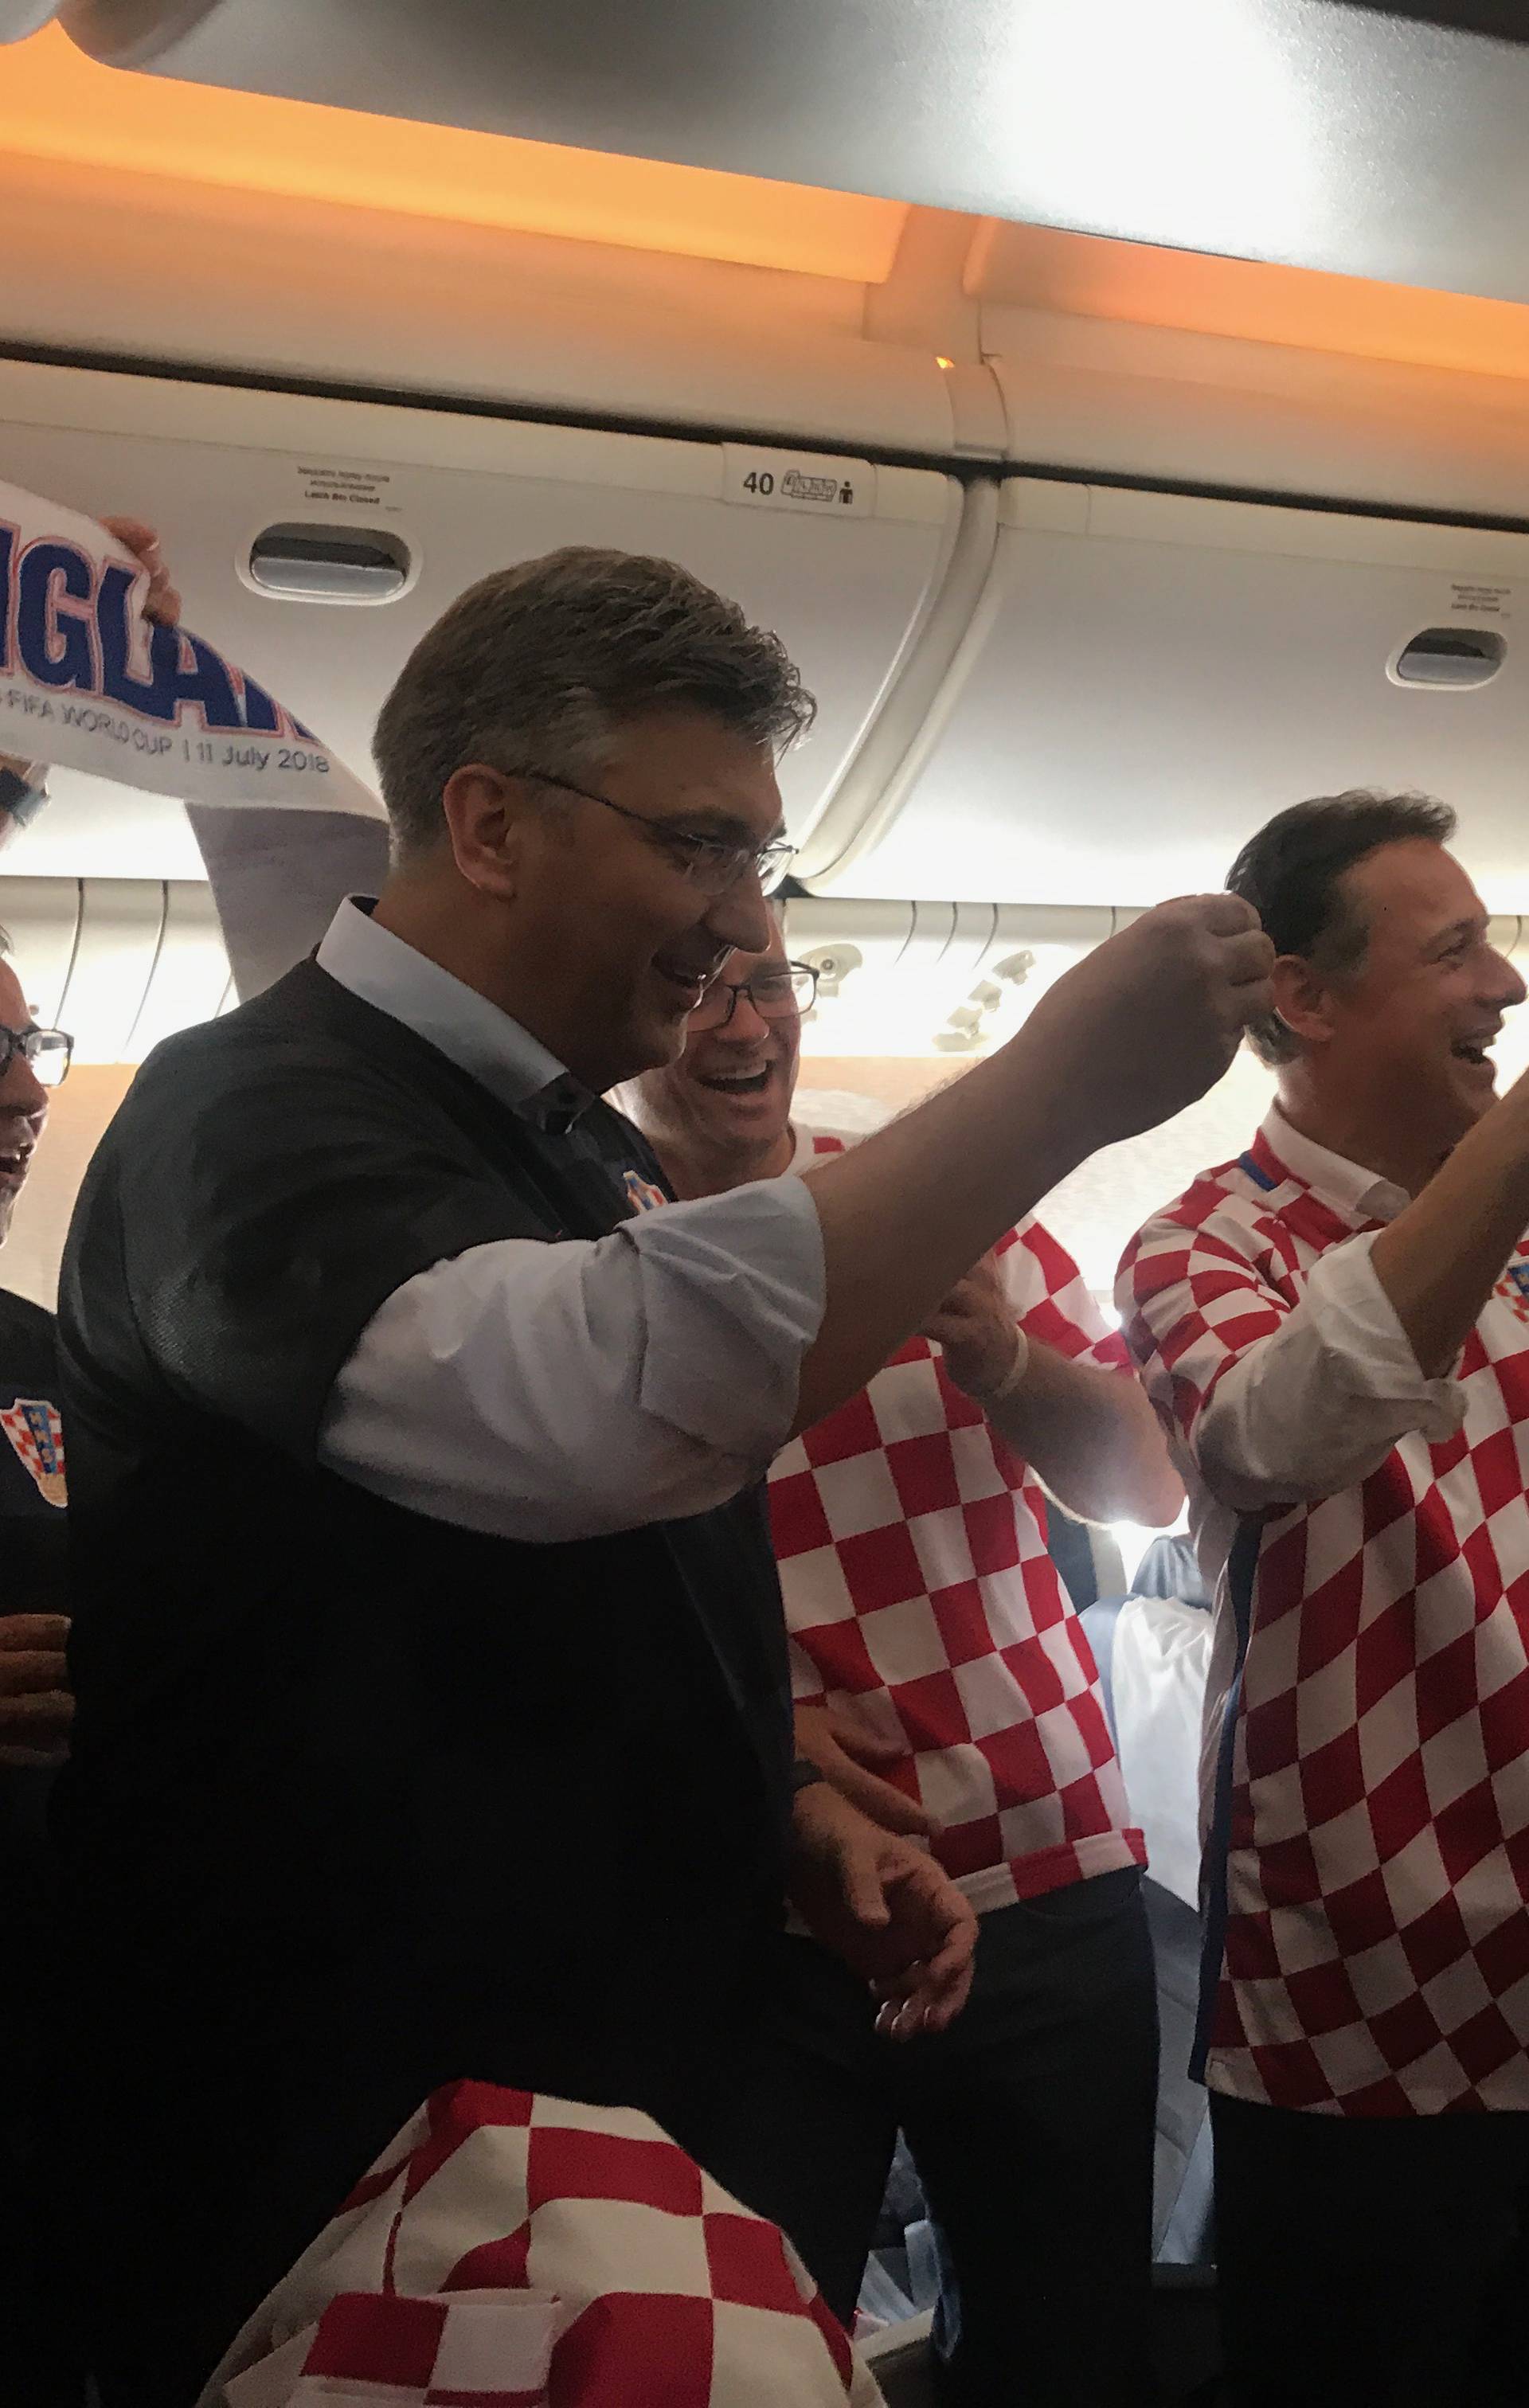 Veselo u avionu: Jandroković i Plenki zapjevali s navijačima